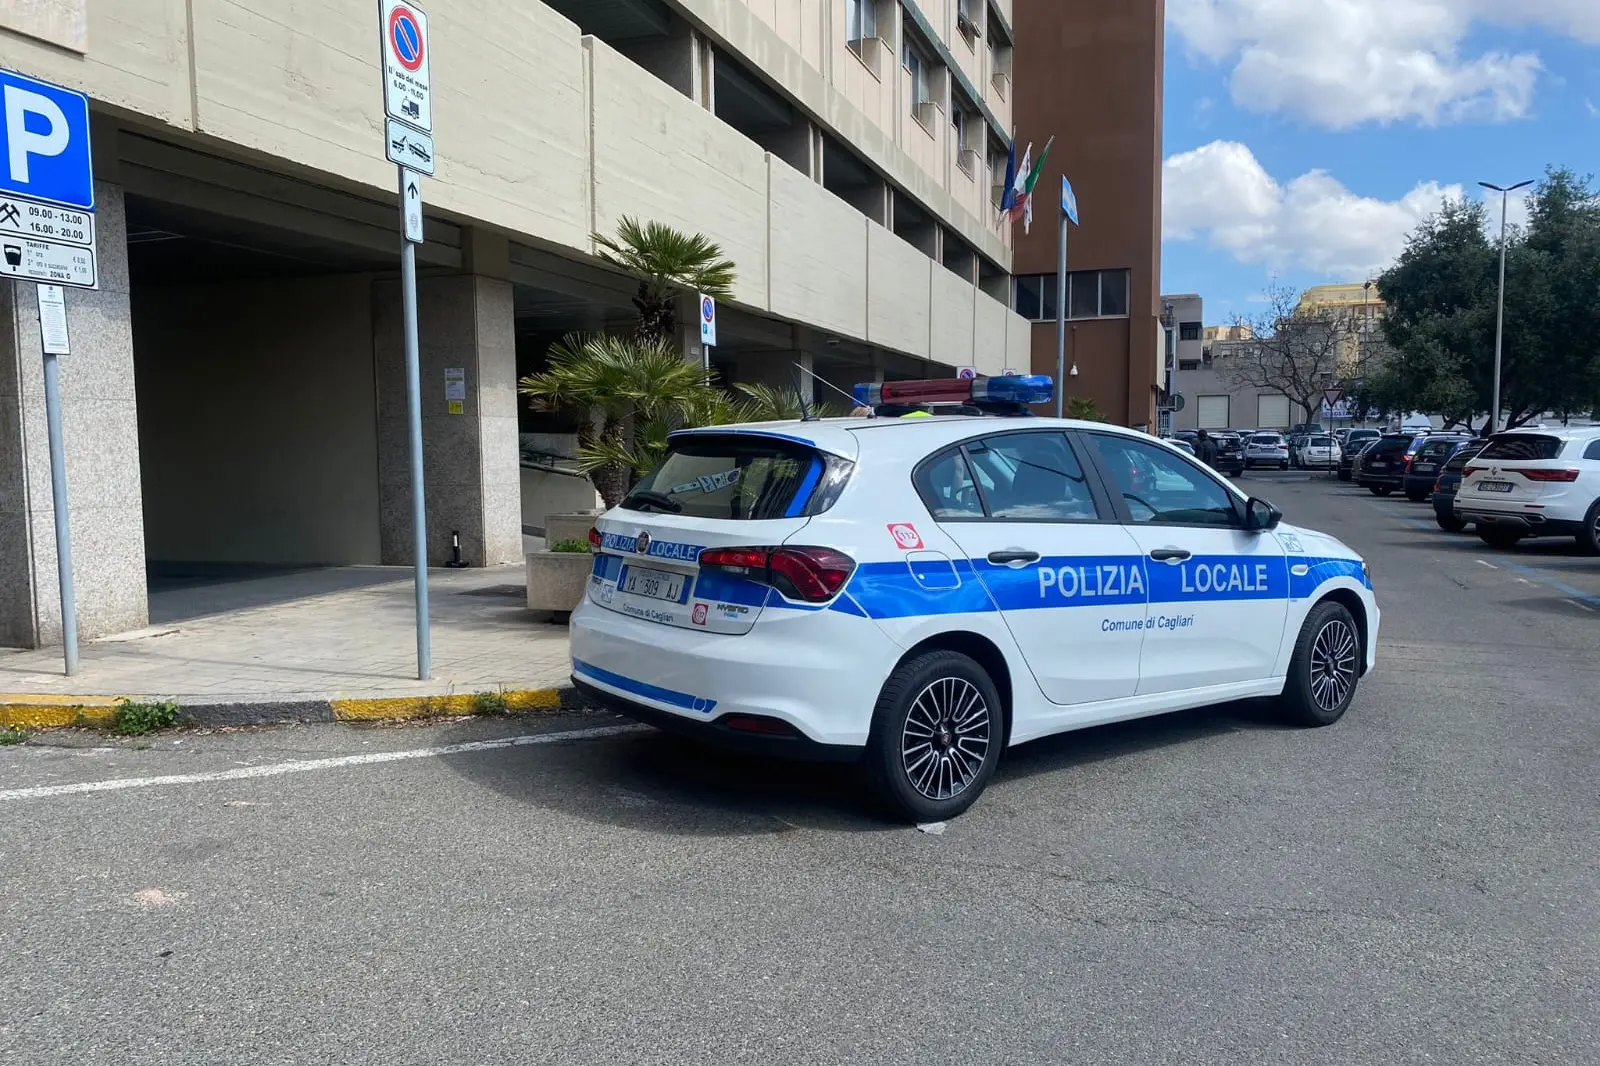 Lokale Polizei in Cagliari